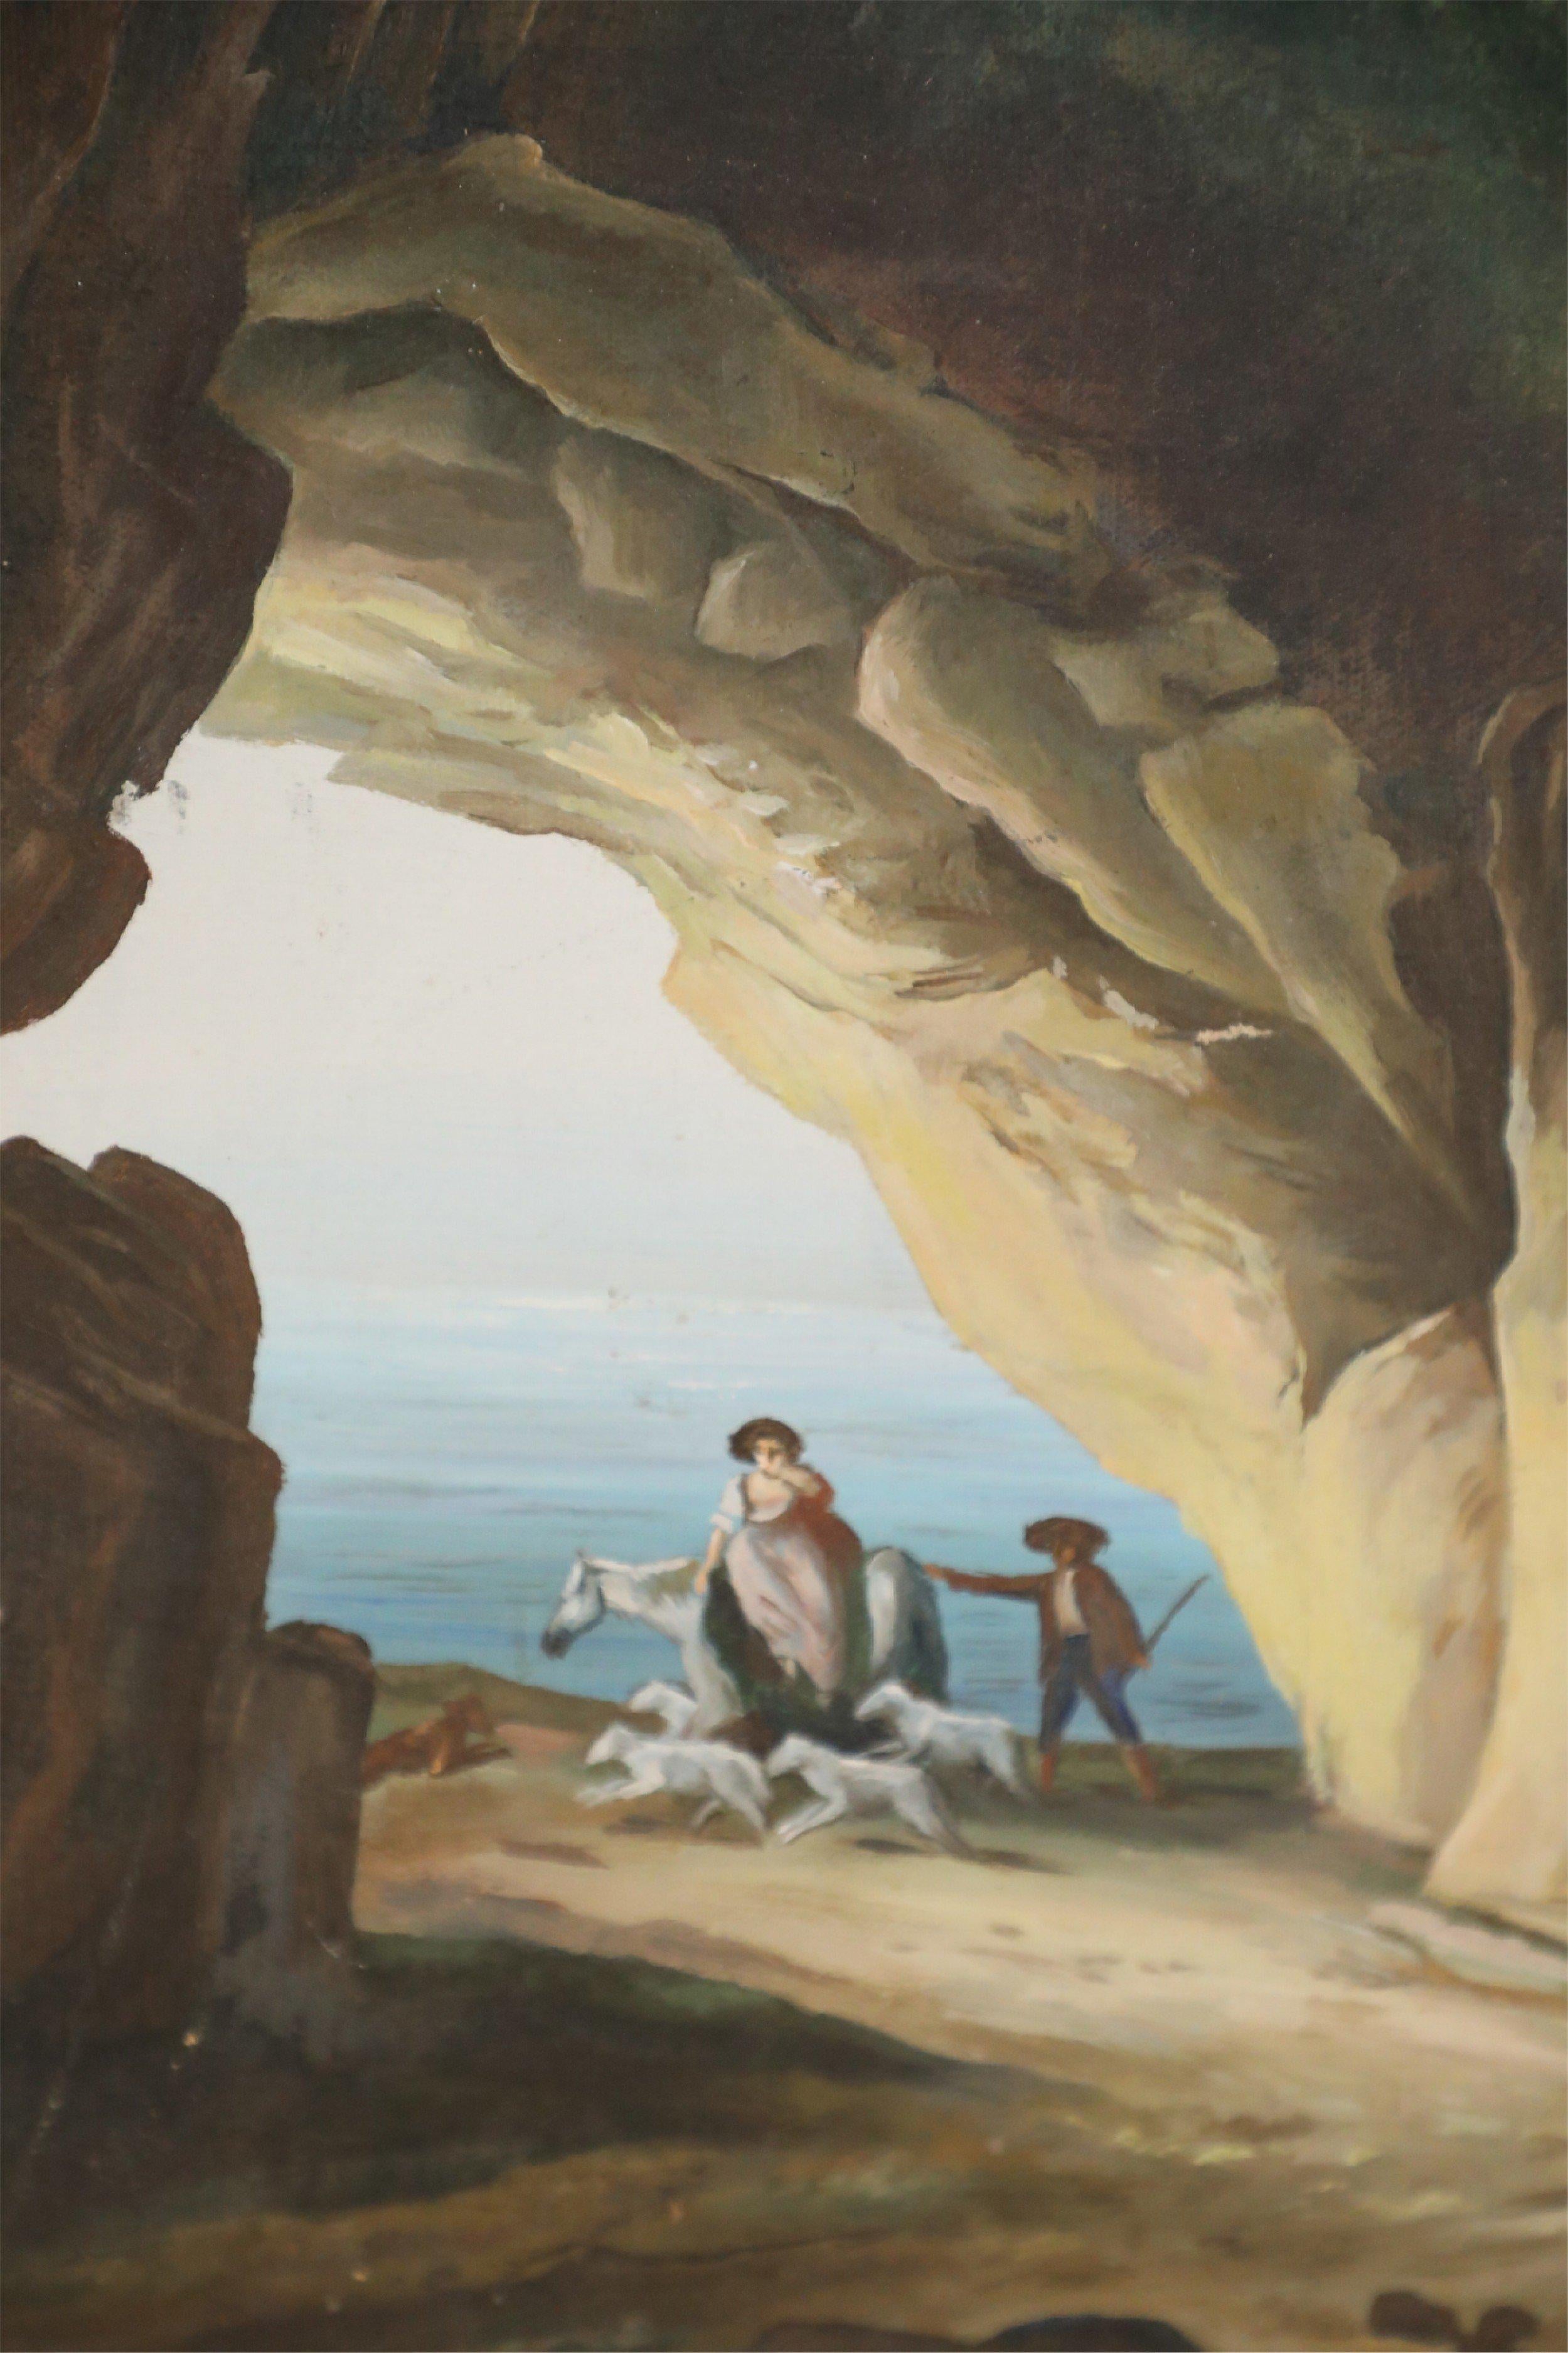 Peinture à l'huile d'époque (20e siècle) représentant une maison au sommet d'une arche en pierre naturelle, à travers laquelle on peut voir des bergers avec un cheval, un chien et un troupeau, ainsi que la mer. Peint sur une toile rectangulaire, non